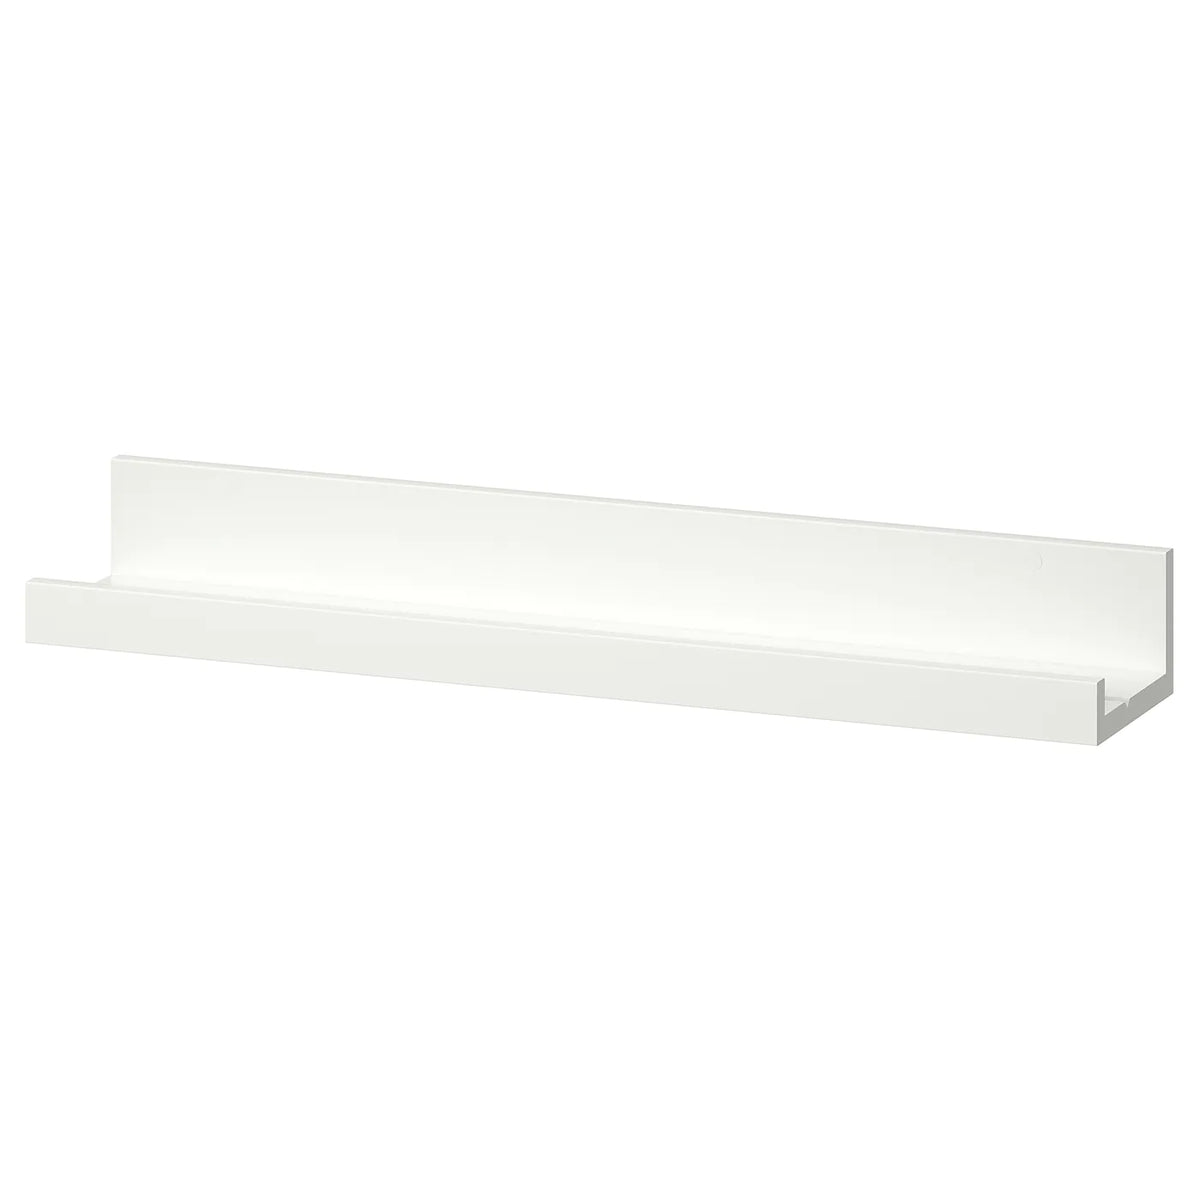 IKEA MOSSLANDA picture ledge, white, 55 cm